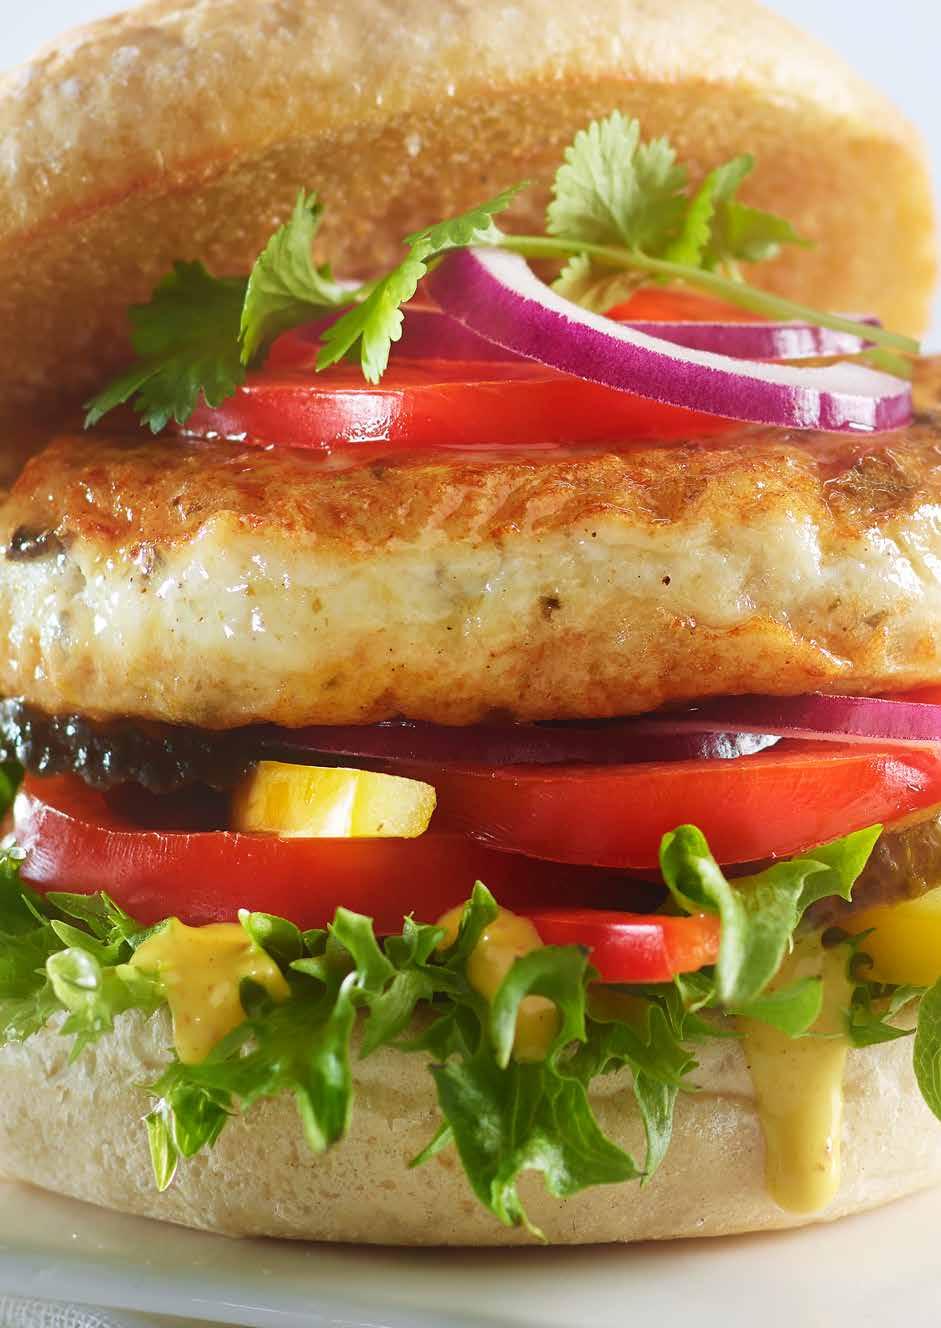 Fiskeburger med tare En velsmakende fiskeburger som inneholder 77% ren fisk, tilsatt tare.